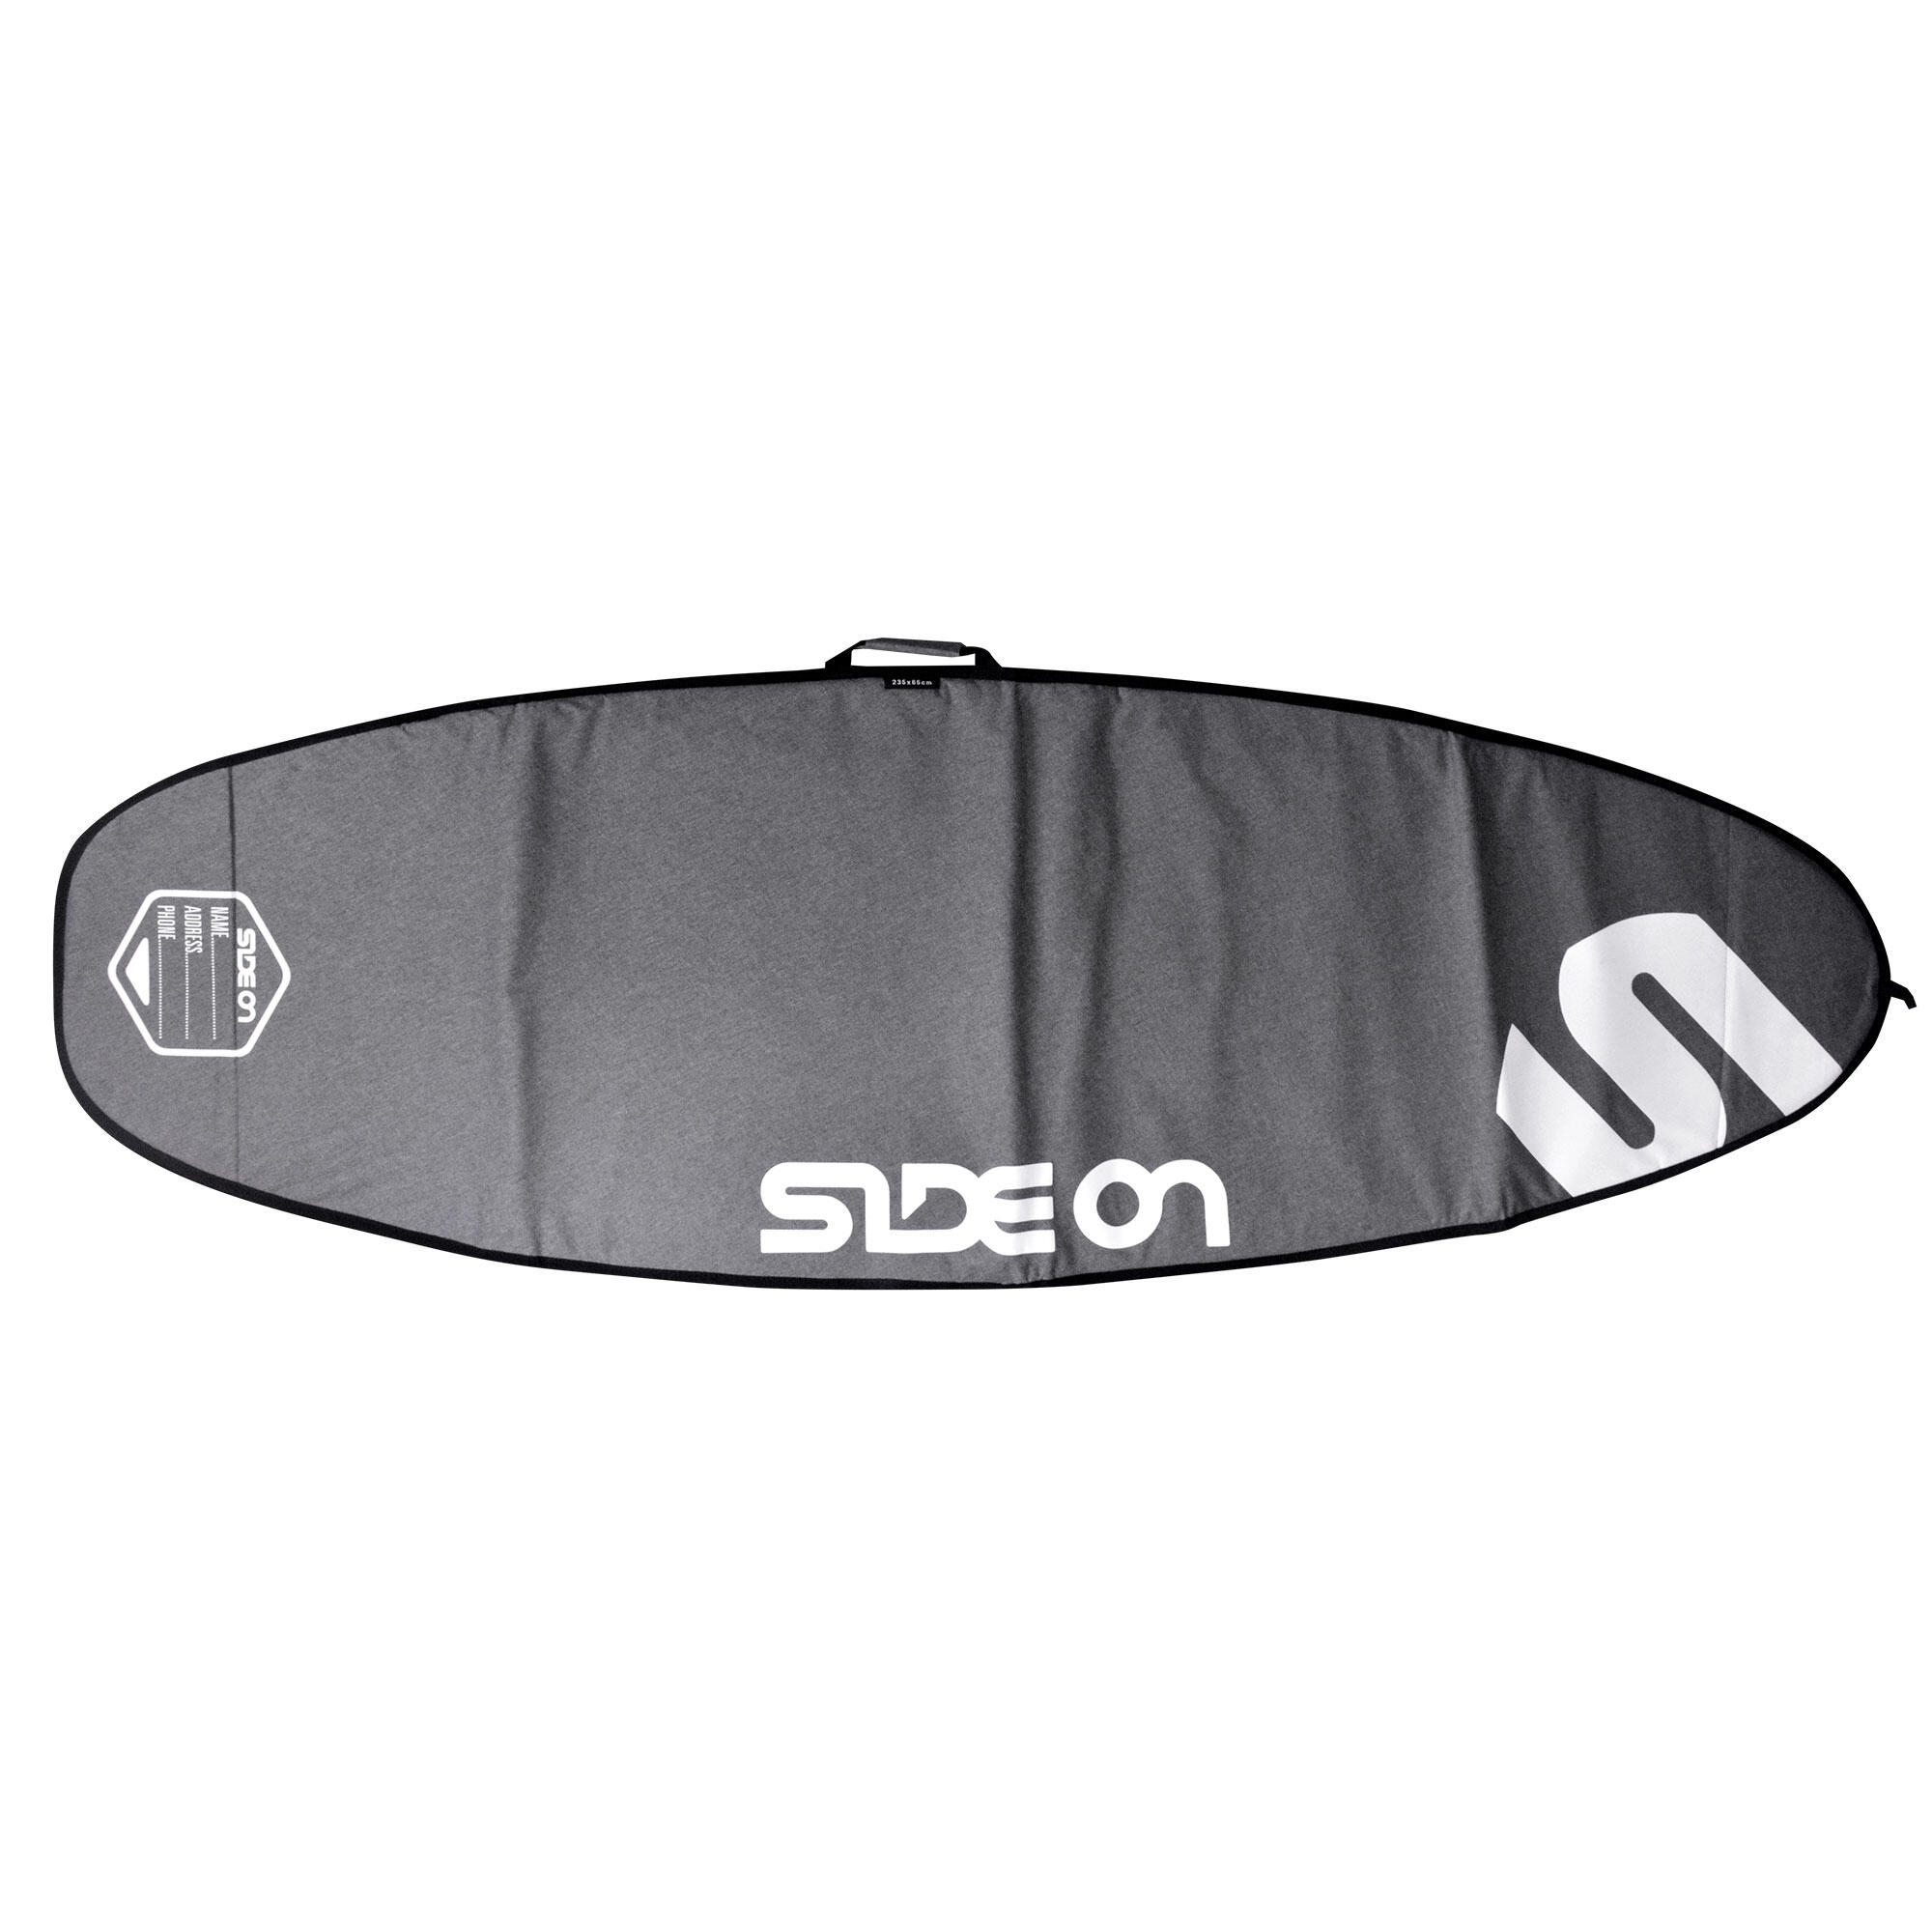 SIDE ON Boardbag Windsurfboard 245/75 cm Side On grau/weiss EINHEITSGRÖSSE